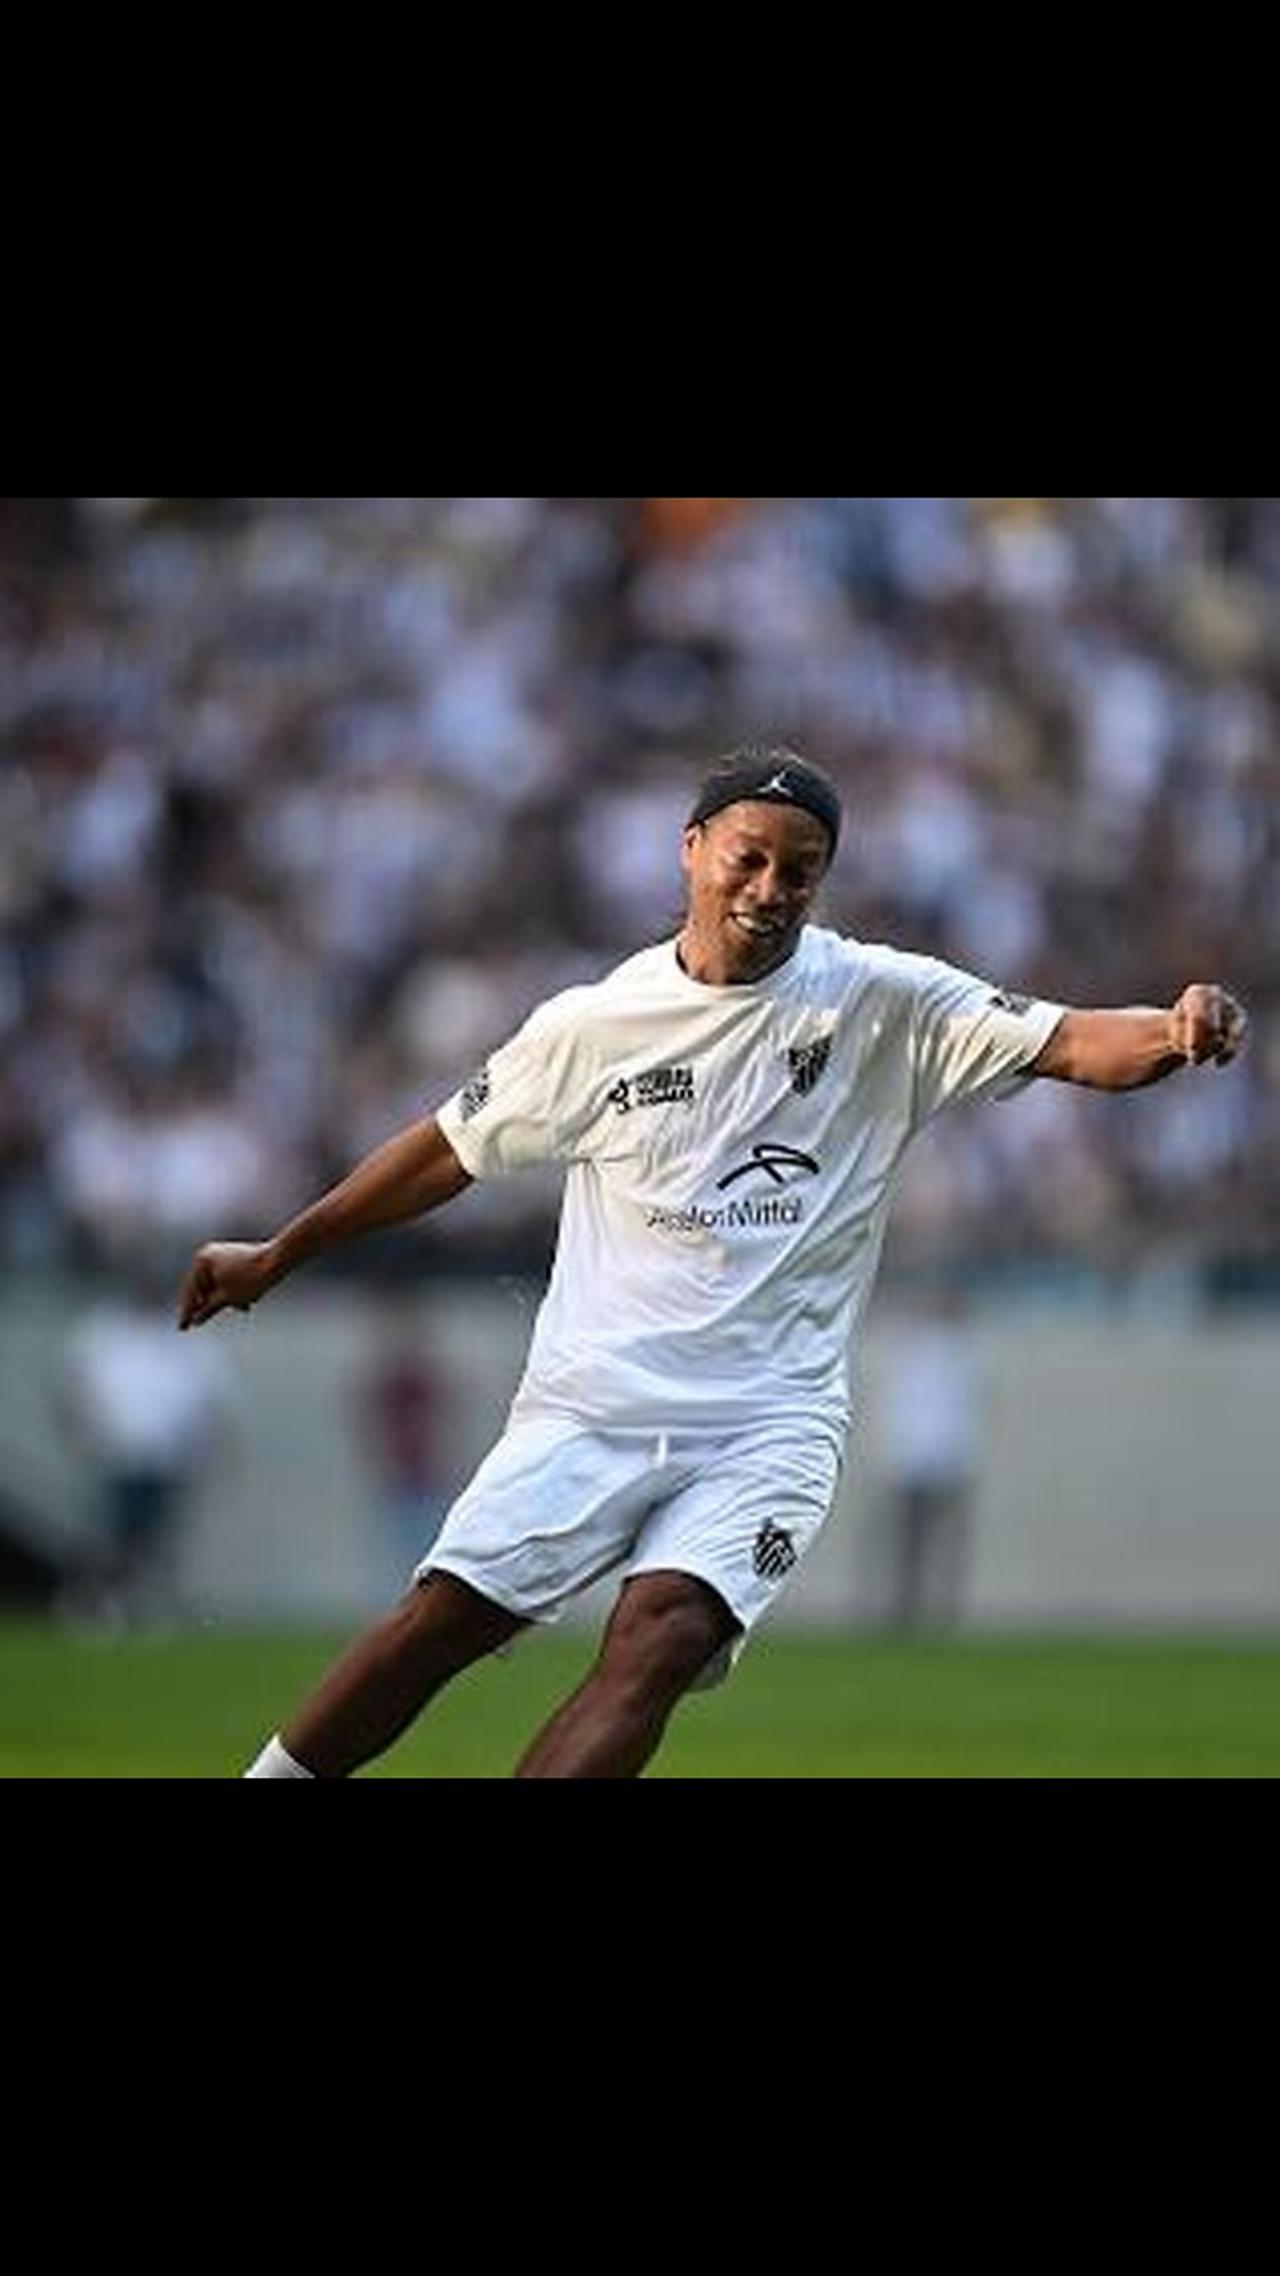 Show de Samba, Ronaldinho gaúcho.